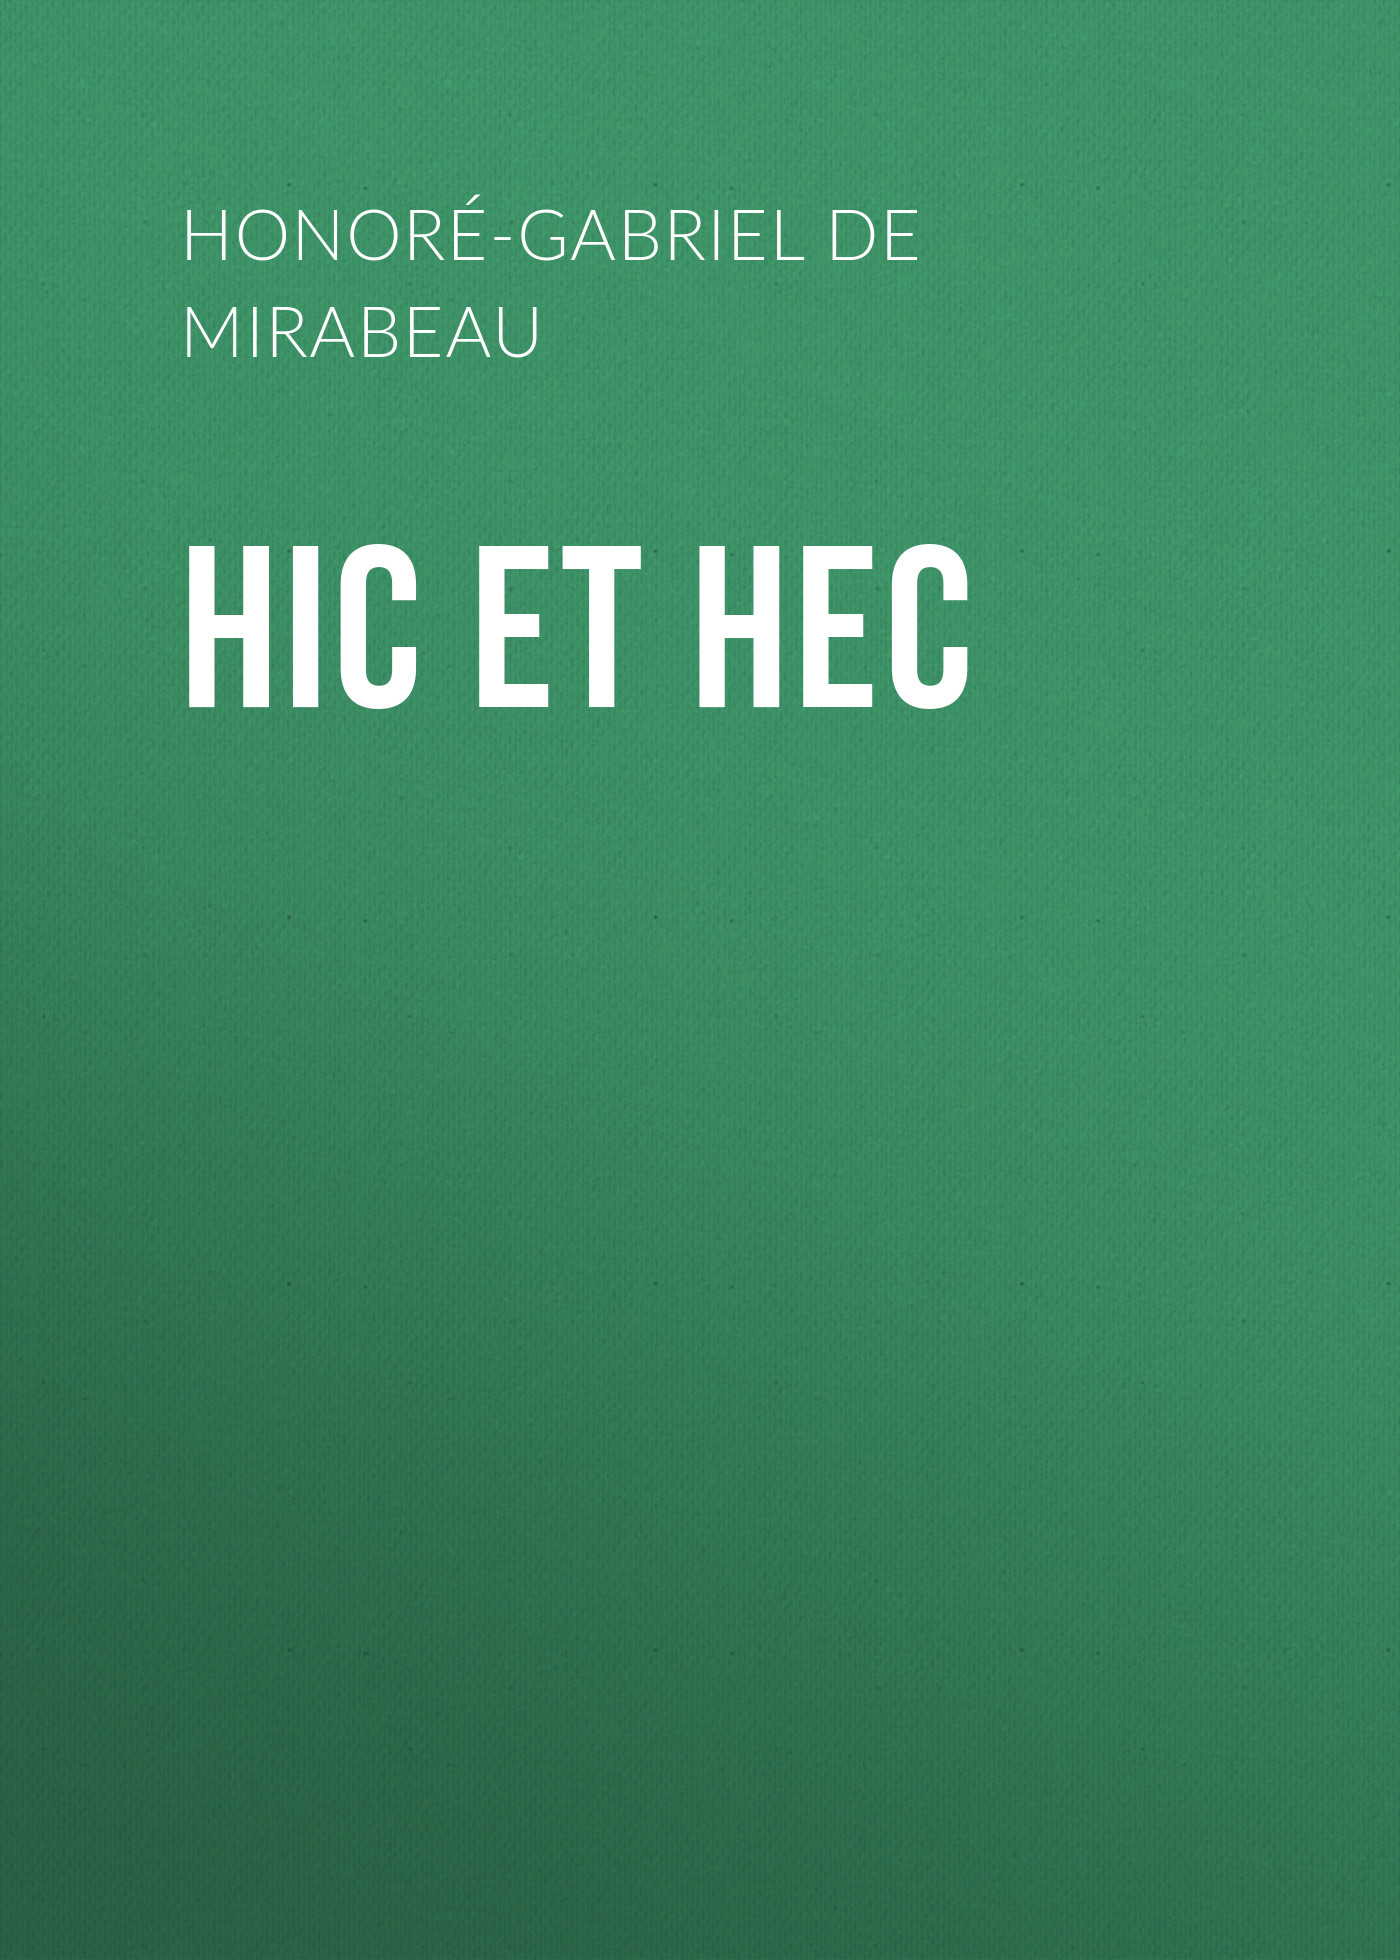 Книга Hic et Hec из серии , созданная Honoré-Gabriel Mirabeau, может относится к жанру Зарубежная классика, Эротика, Секс, Литература 18 века, Зарубежная старинная литература. Стоимость электронной книги Hic et Hec с идентификатором 36096029 составляет 0 руб.